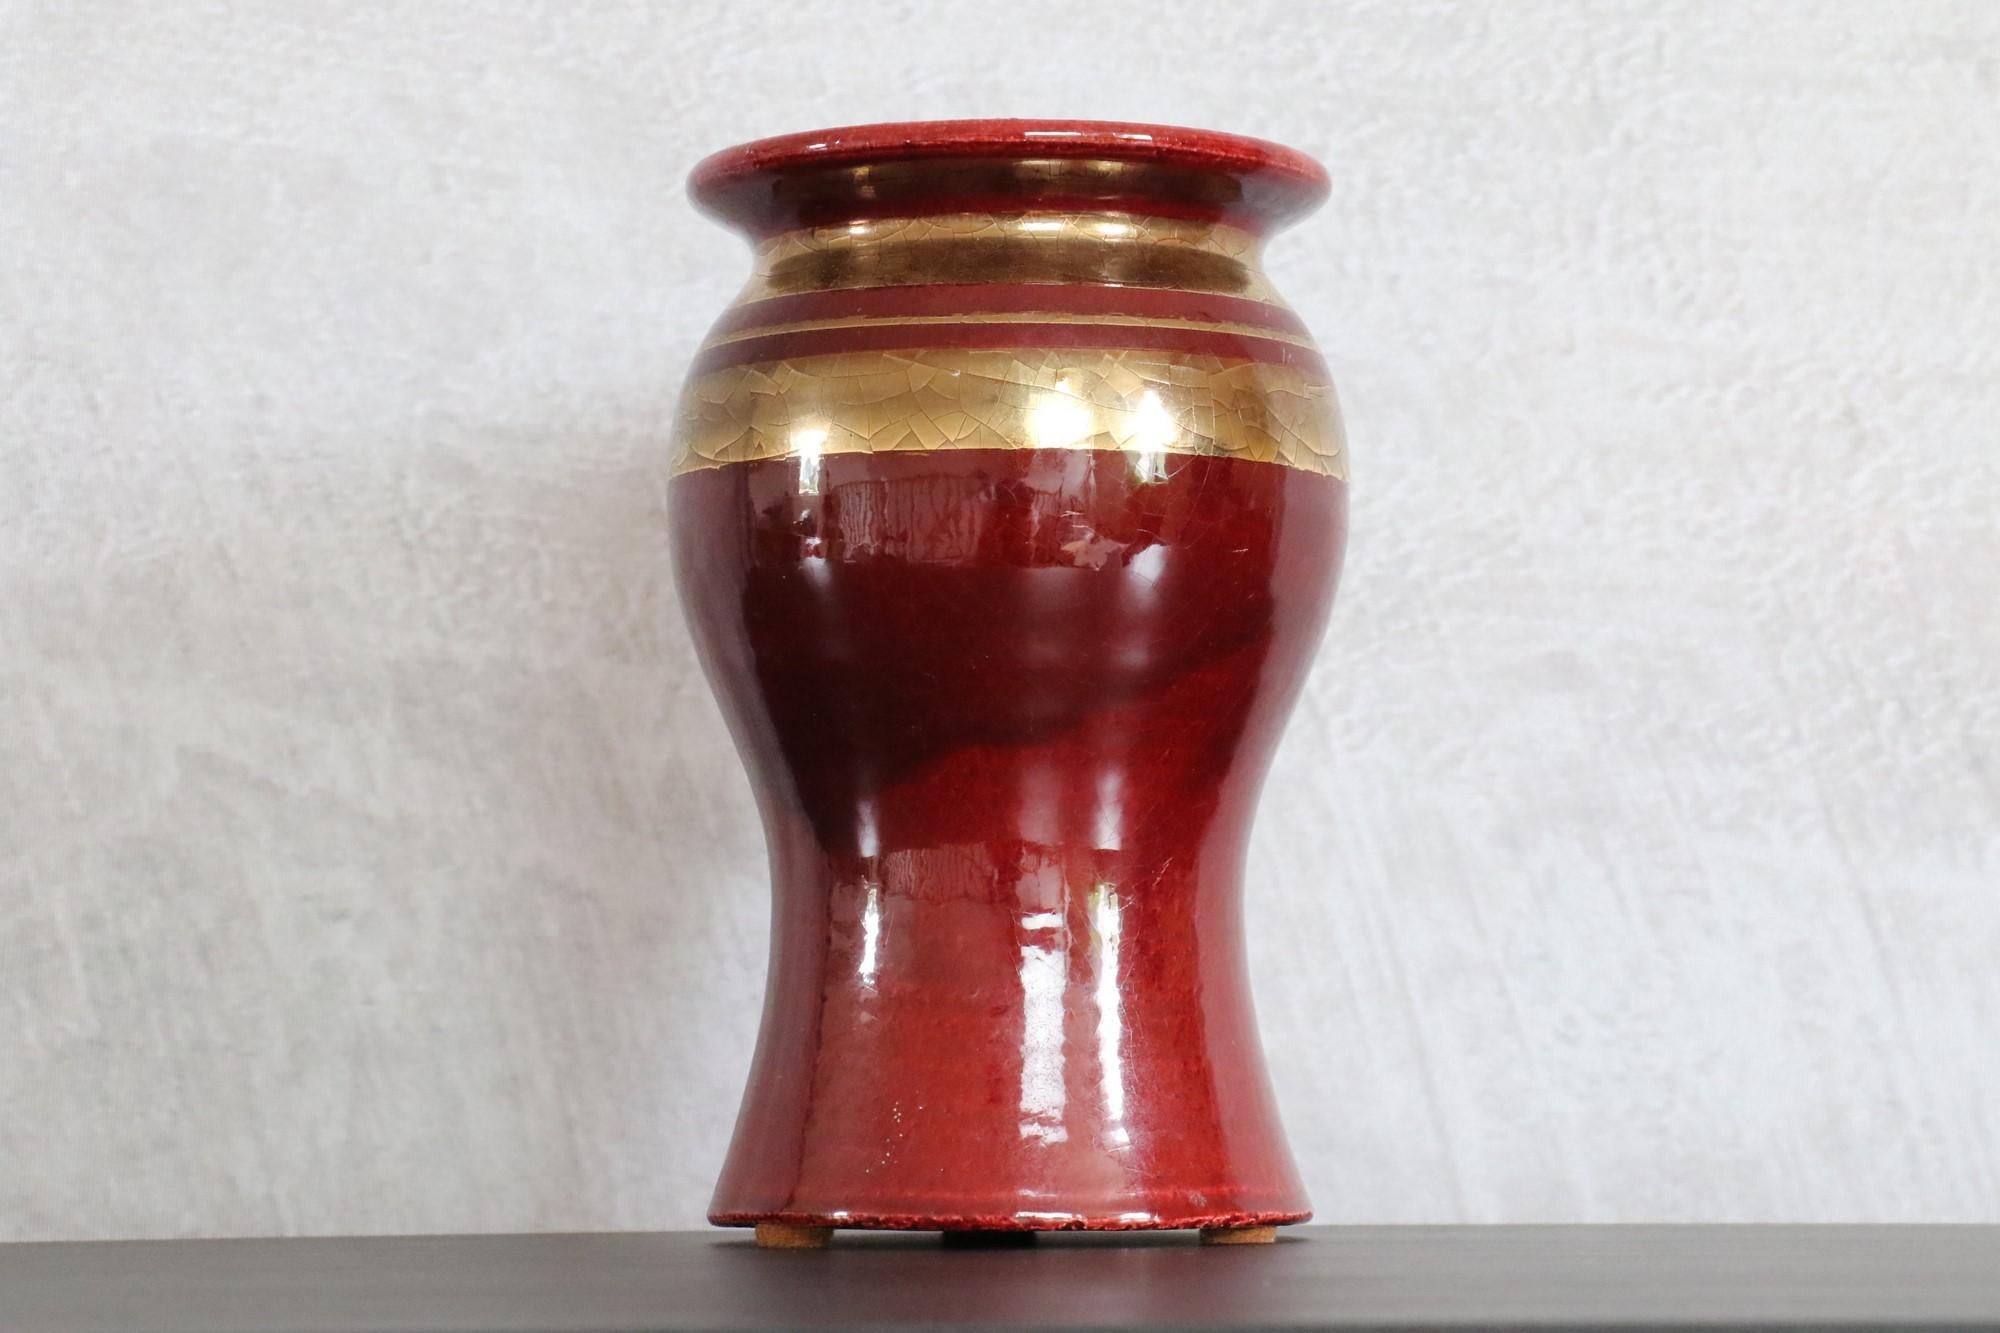 Vase en céramique française rouge et or de Georges Pelletier, signé, années 1970.

La céramique proposée ici présente un design attrayant dans des tons profonds d'or et de rouge. Fabriqué à la main, il est émaillé avec une finition brillante et